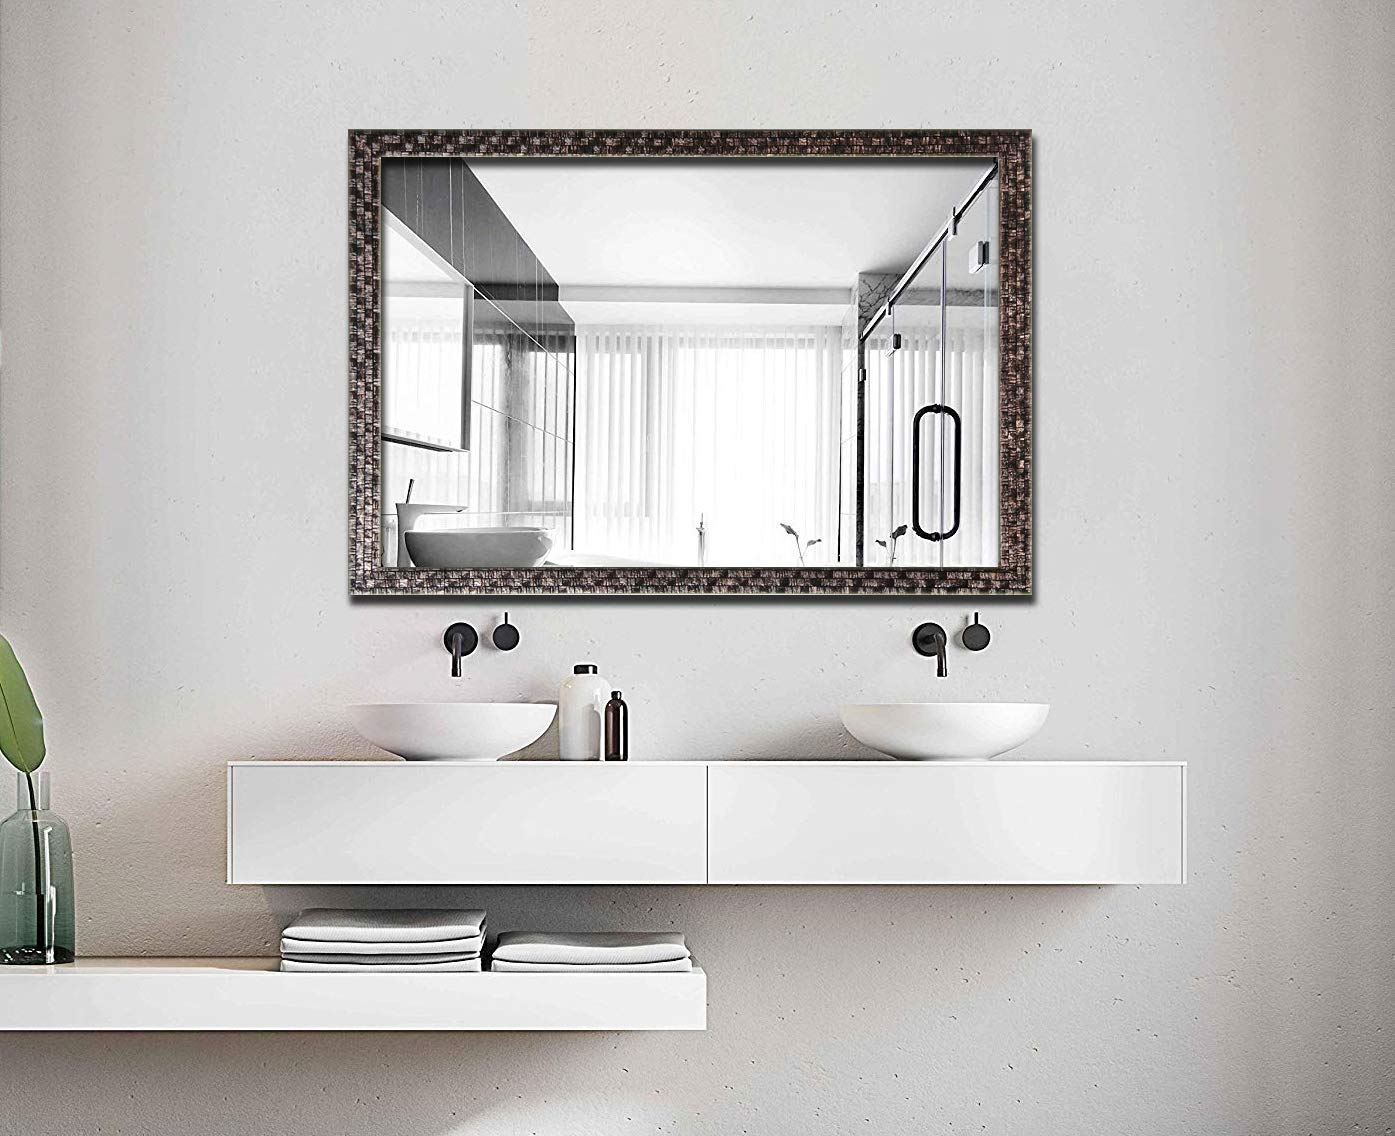 Gương nhà tắm hình chữ nhật, hình vuông được nhiều người lựa chọn